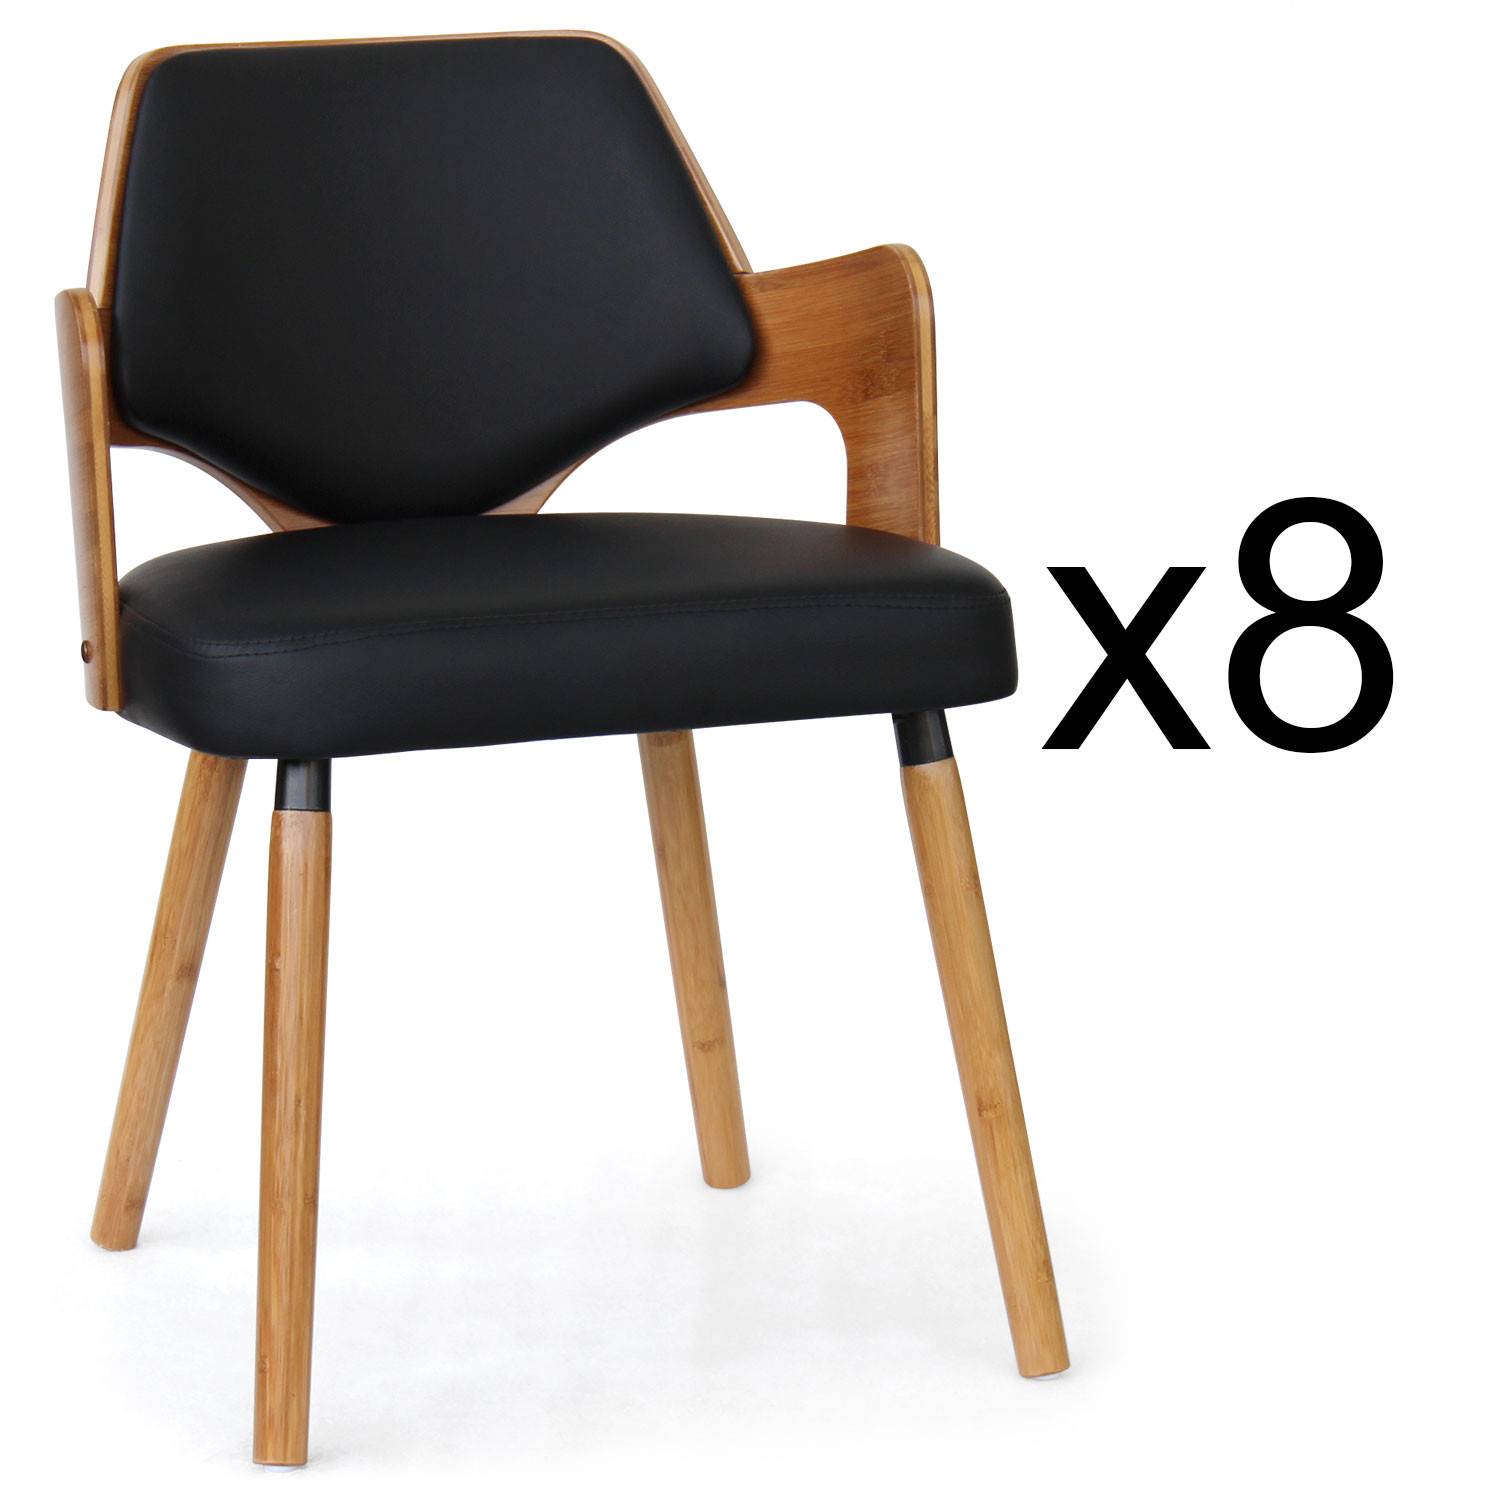 Lote de 8 sillas escandinavas Dima en madera natural y negro